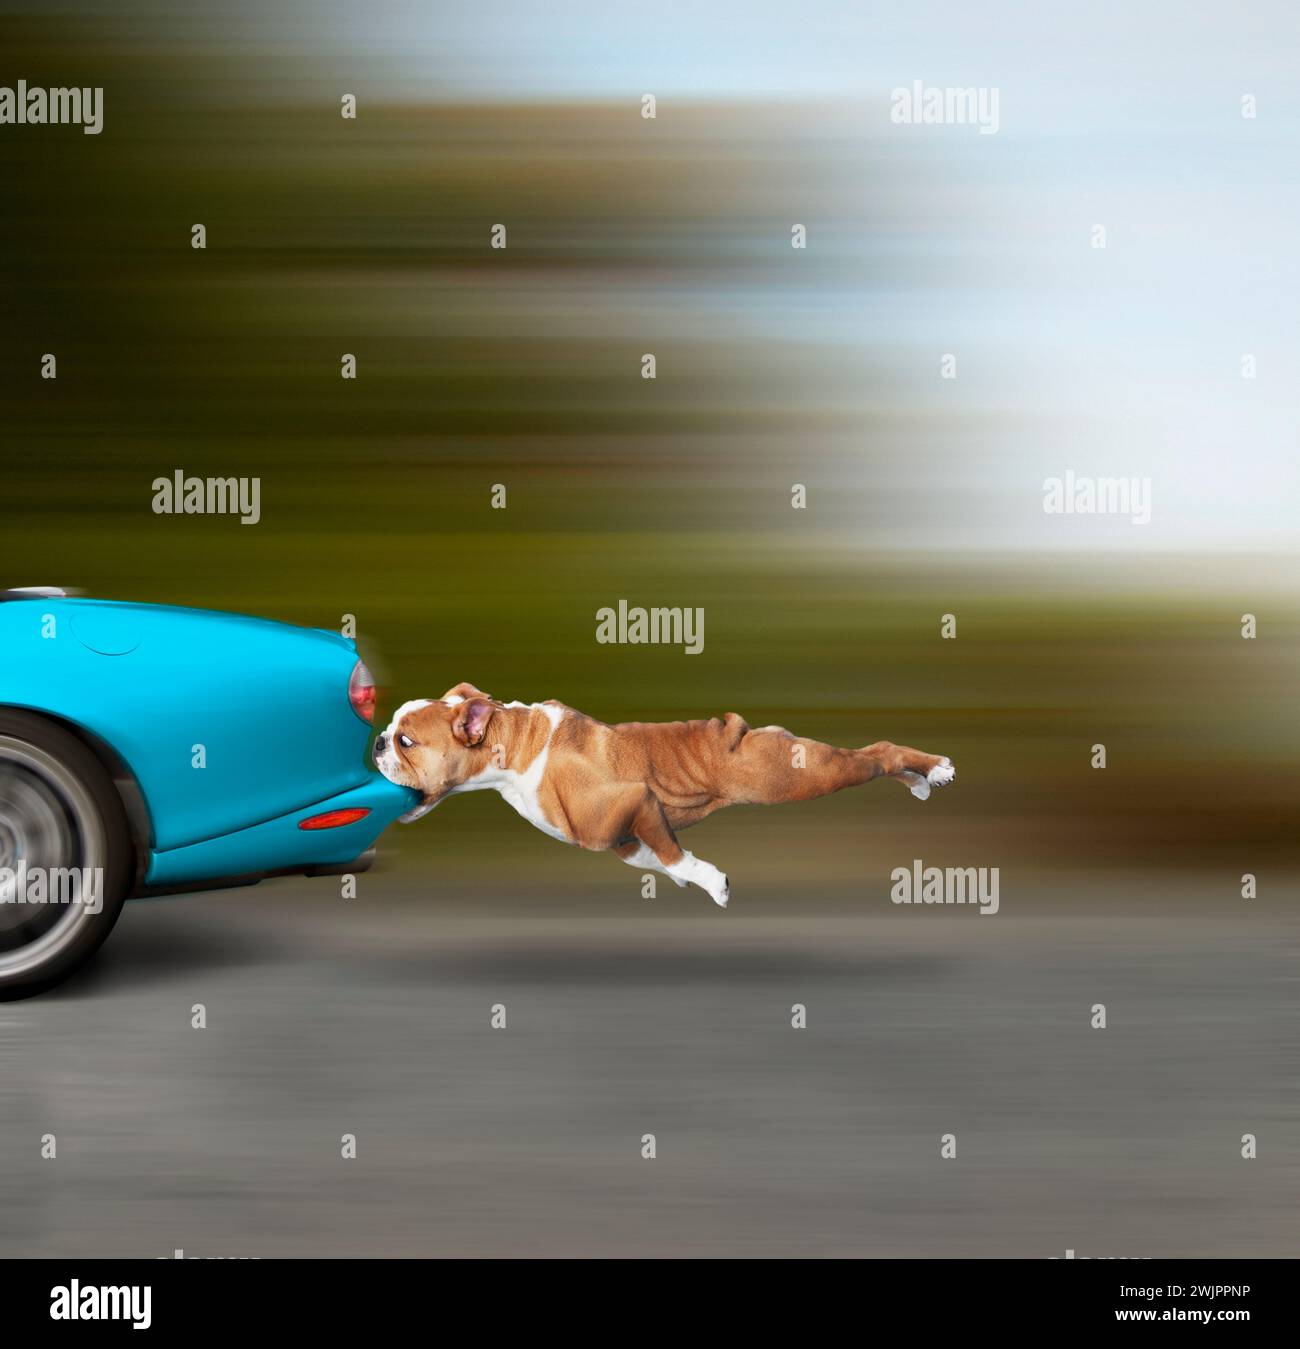 Un chien, ses mâchoires serrées autour du pare-chocs d'une voiture qui accélère, soulève la question : et maintenant? Banque D'Images